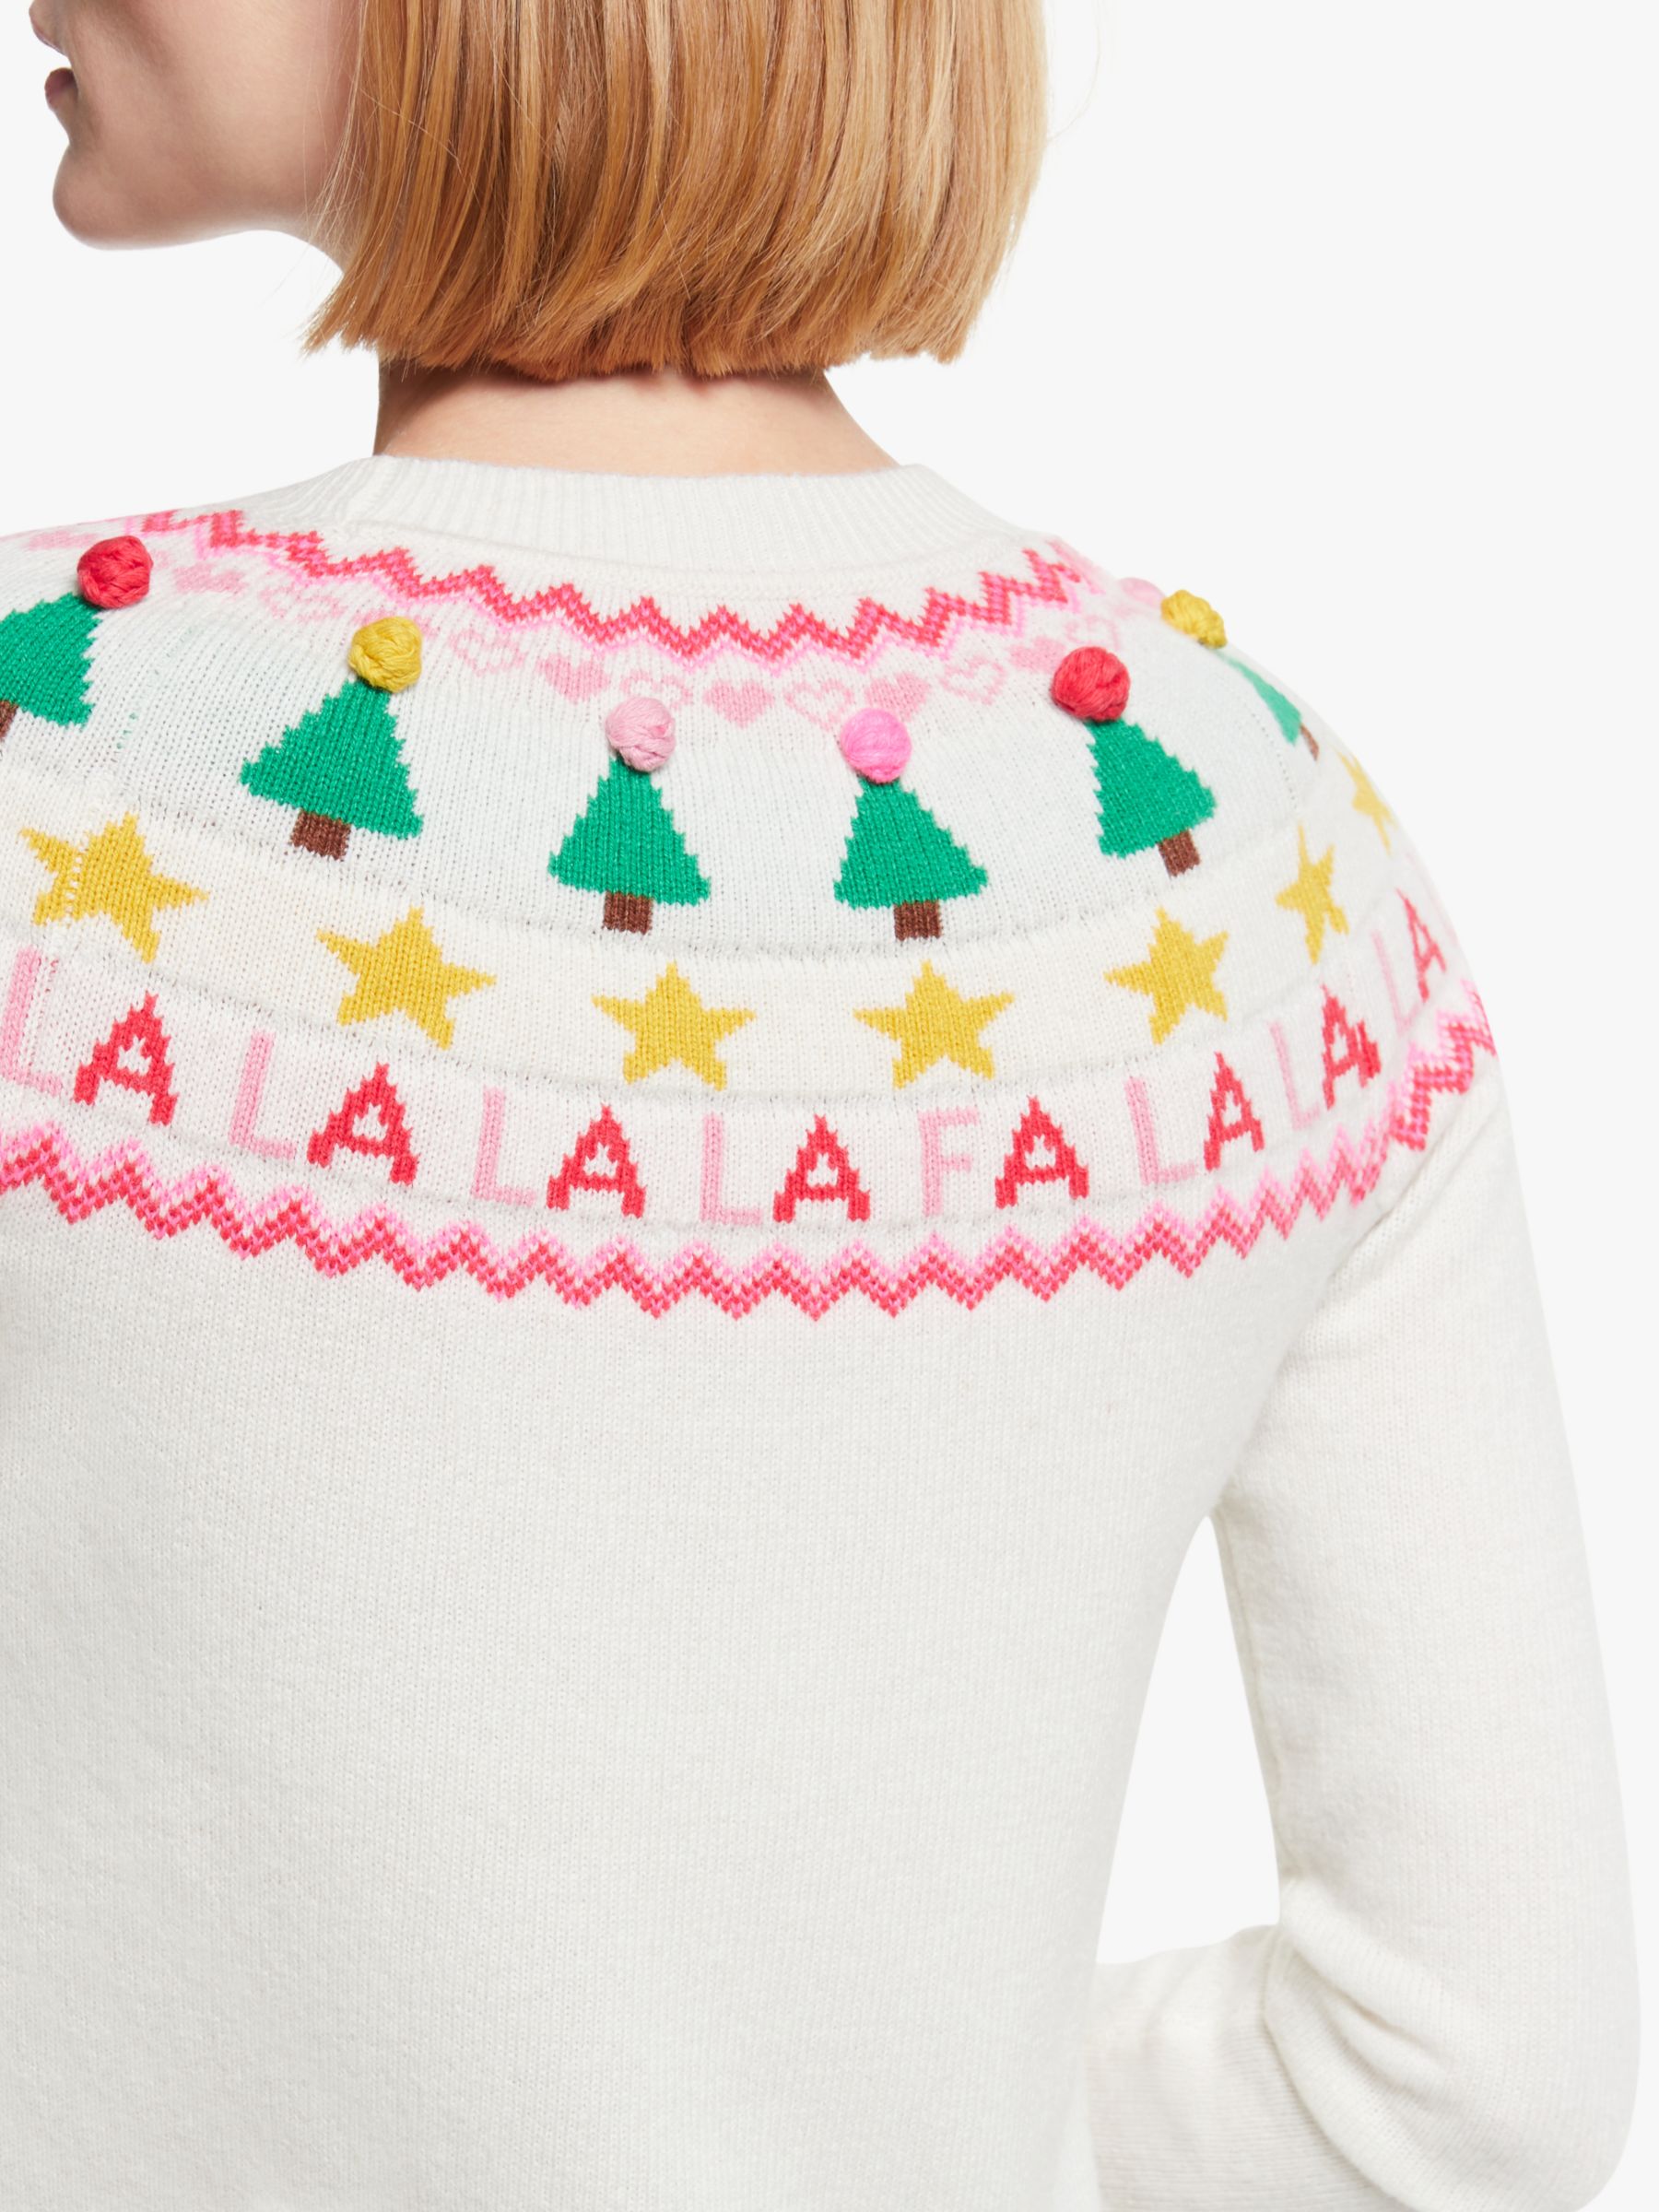 Fairisle design Christmas jumper from Boden ⋆ Boden Christmas